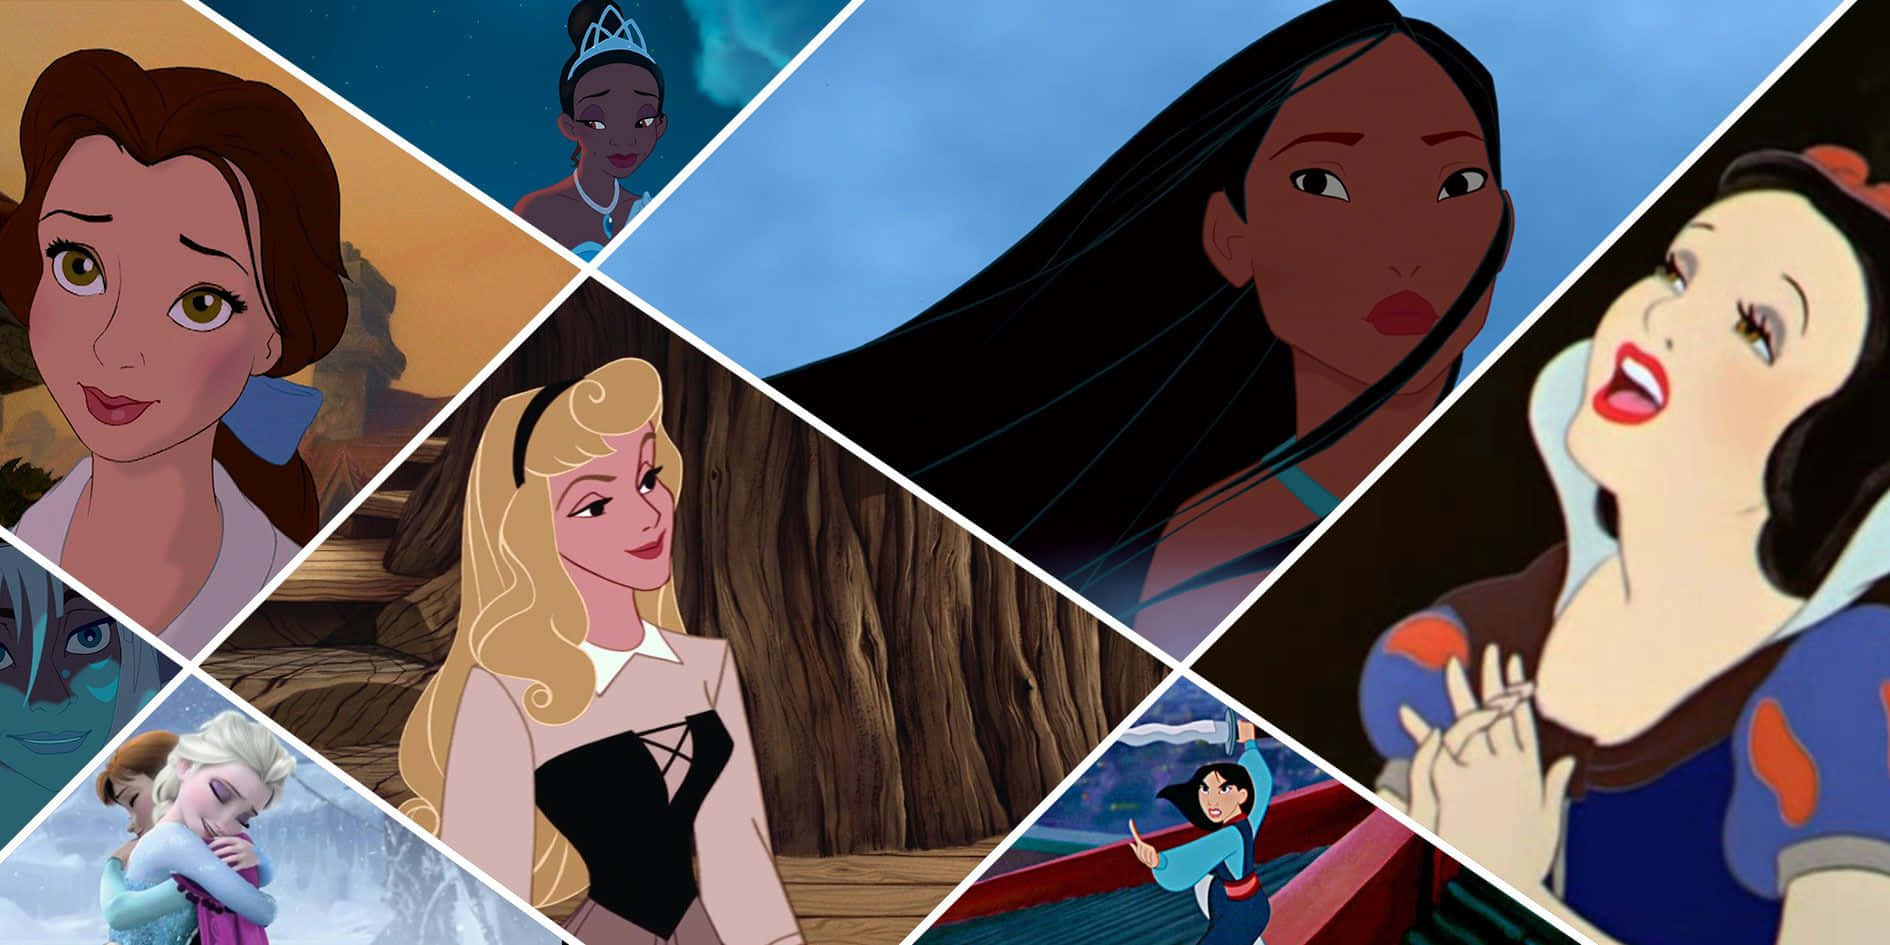 Billeder af Disney Prinsesser pryder tapetet.